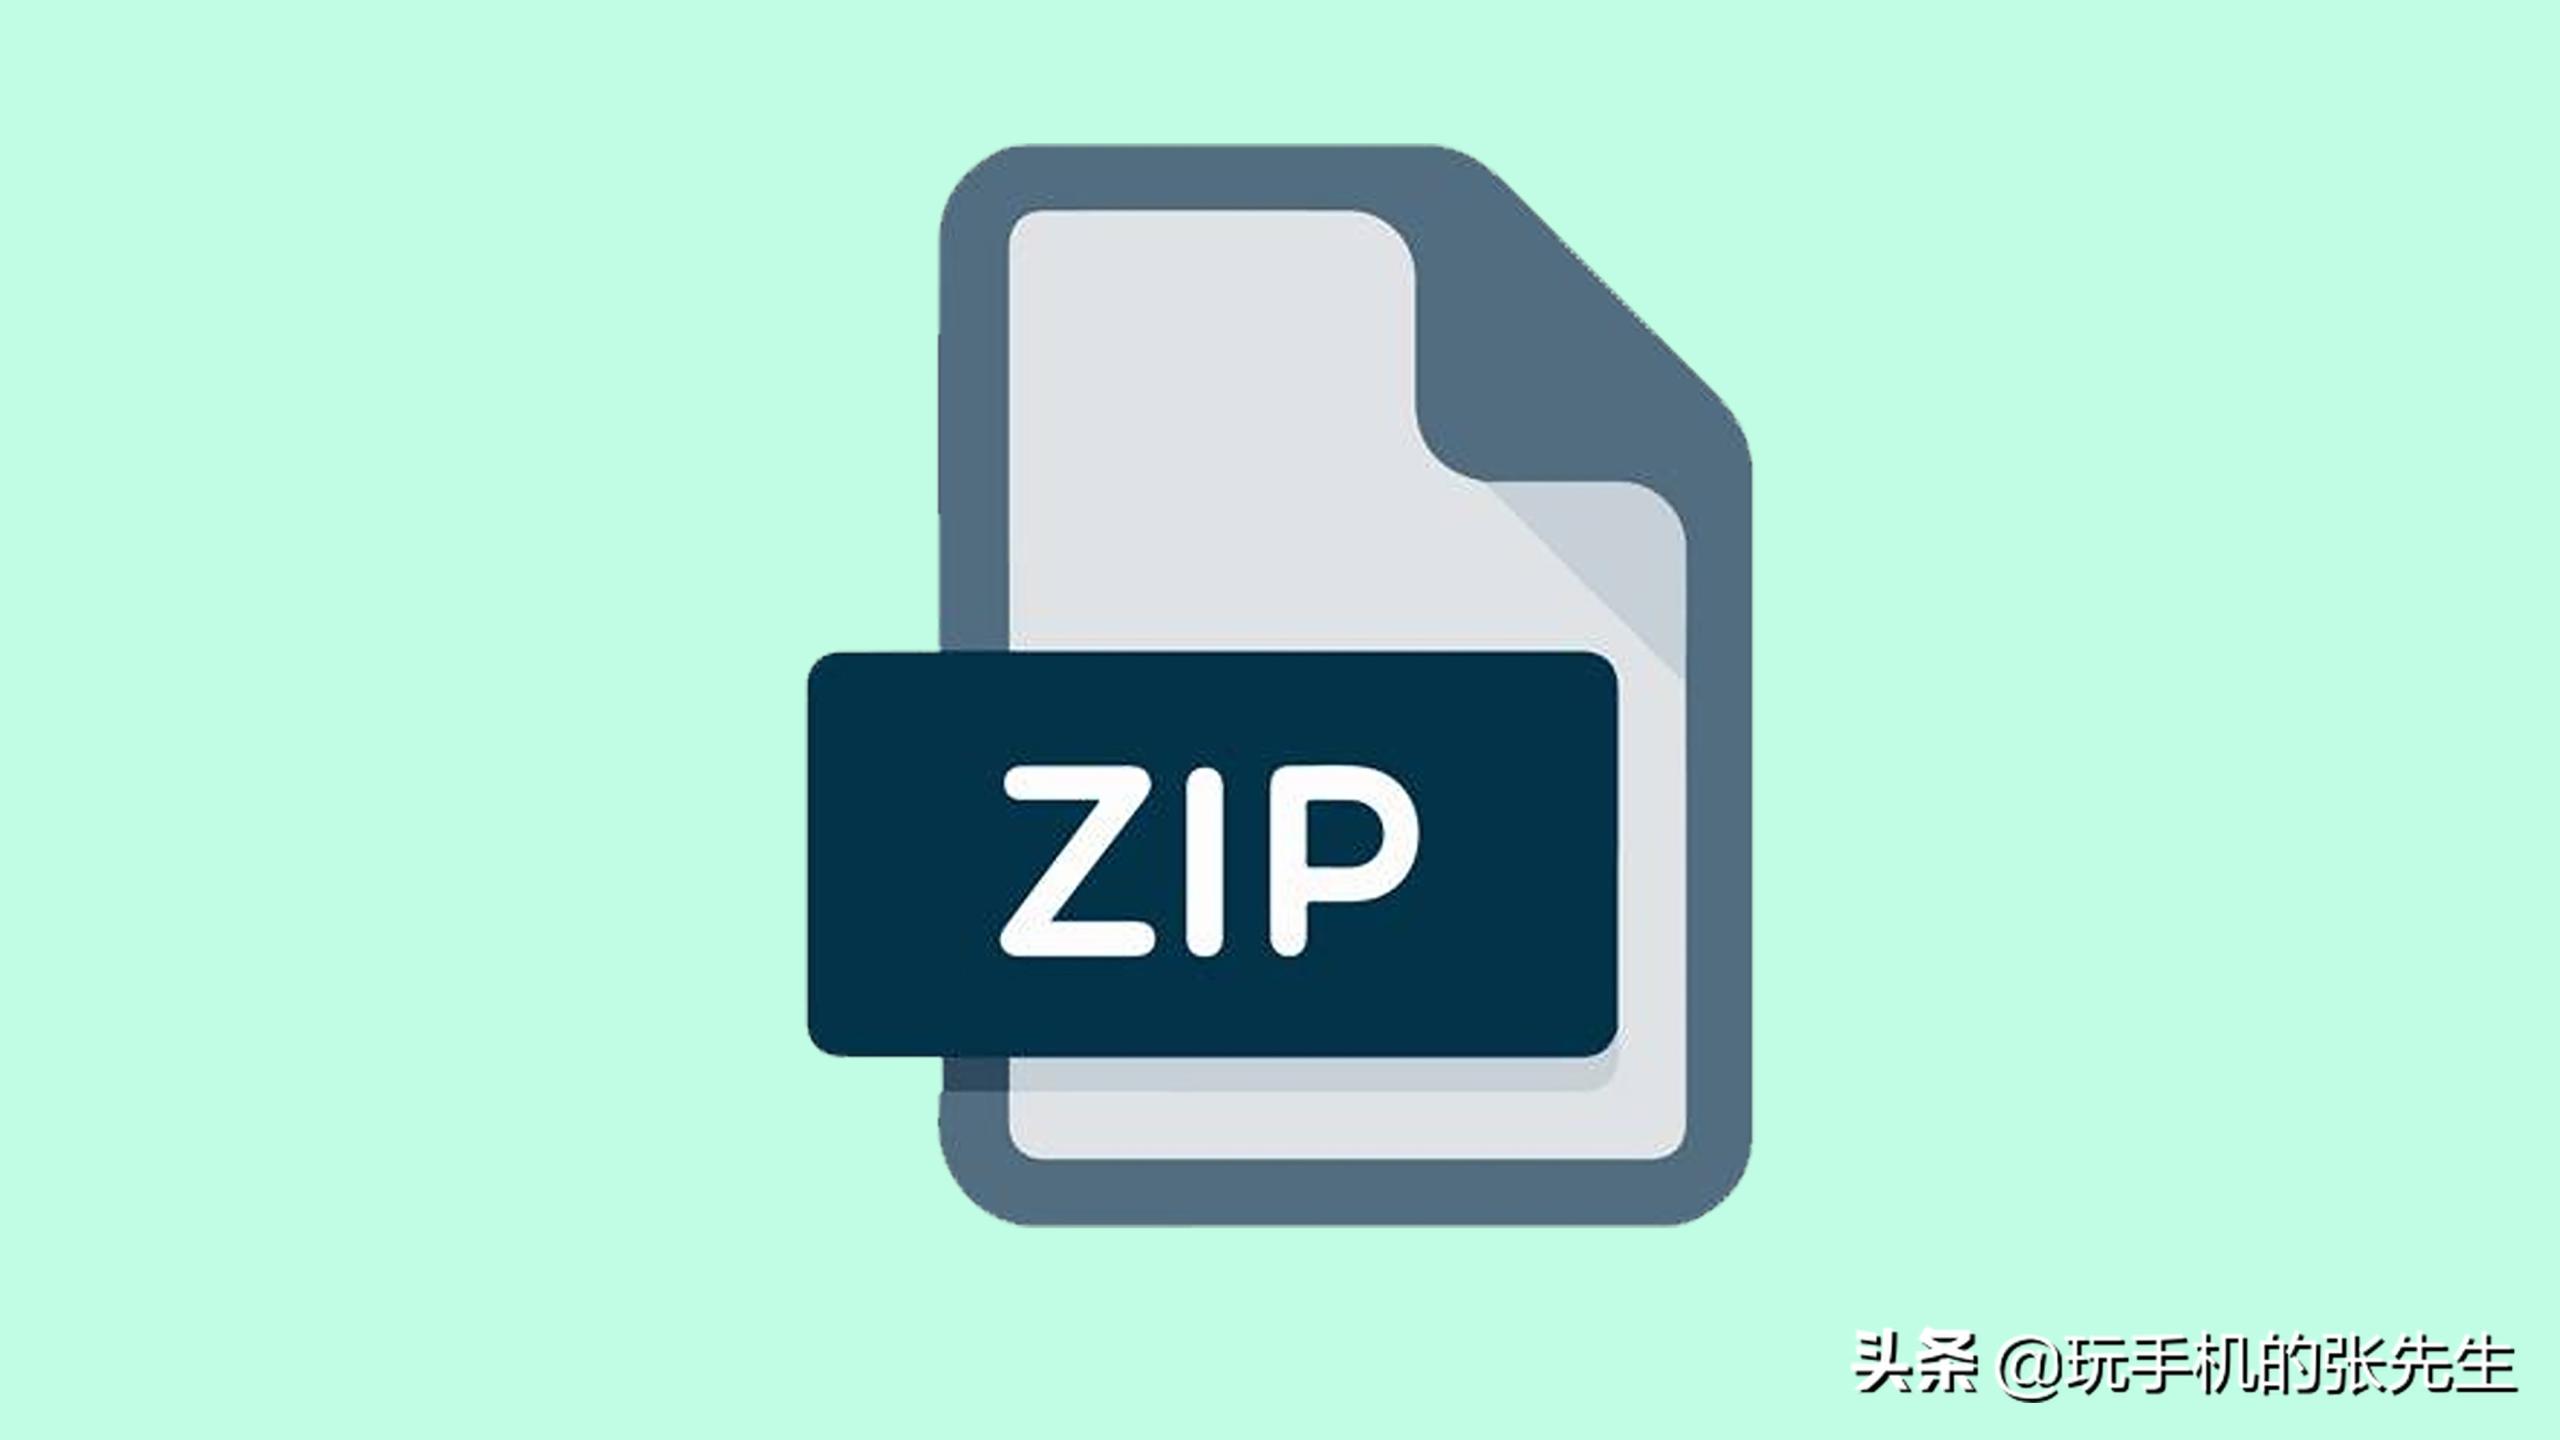 zip格式的文件怎么打开，手机和电脑的操作方法一样吗？